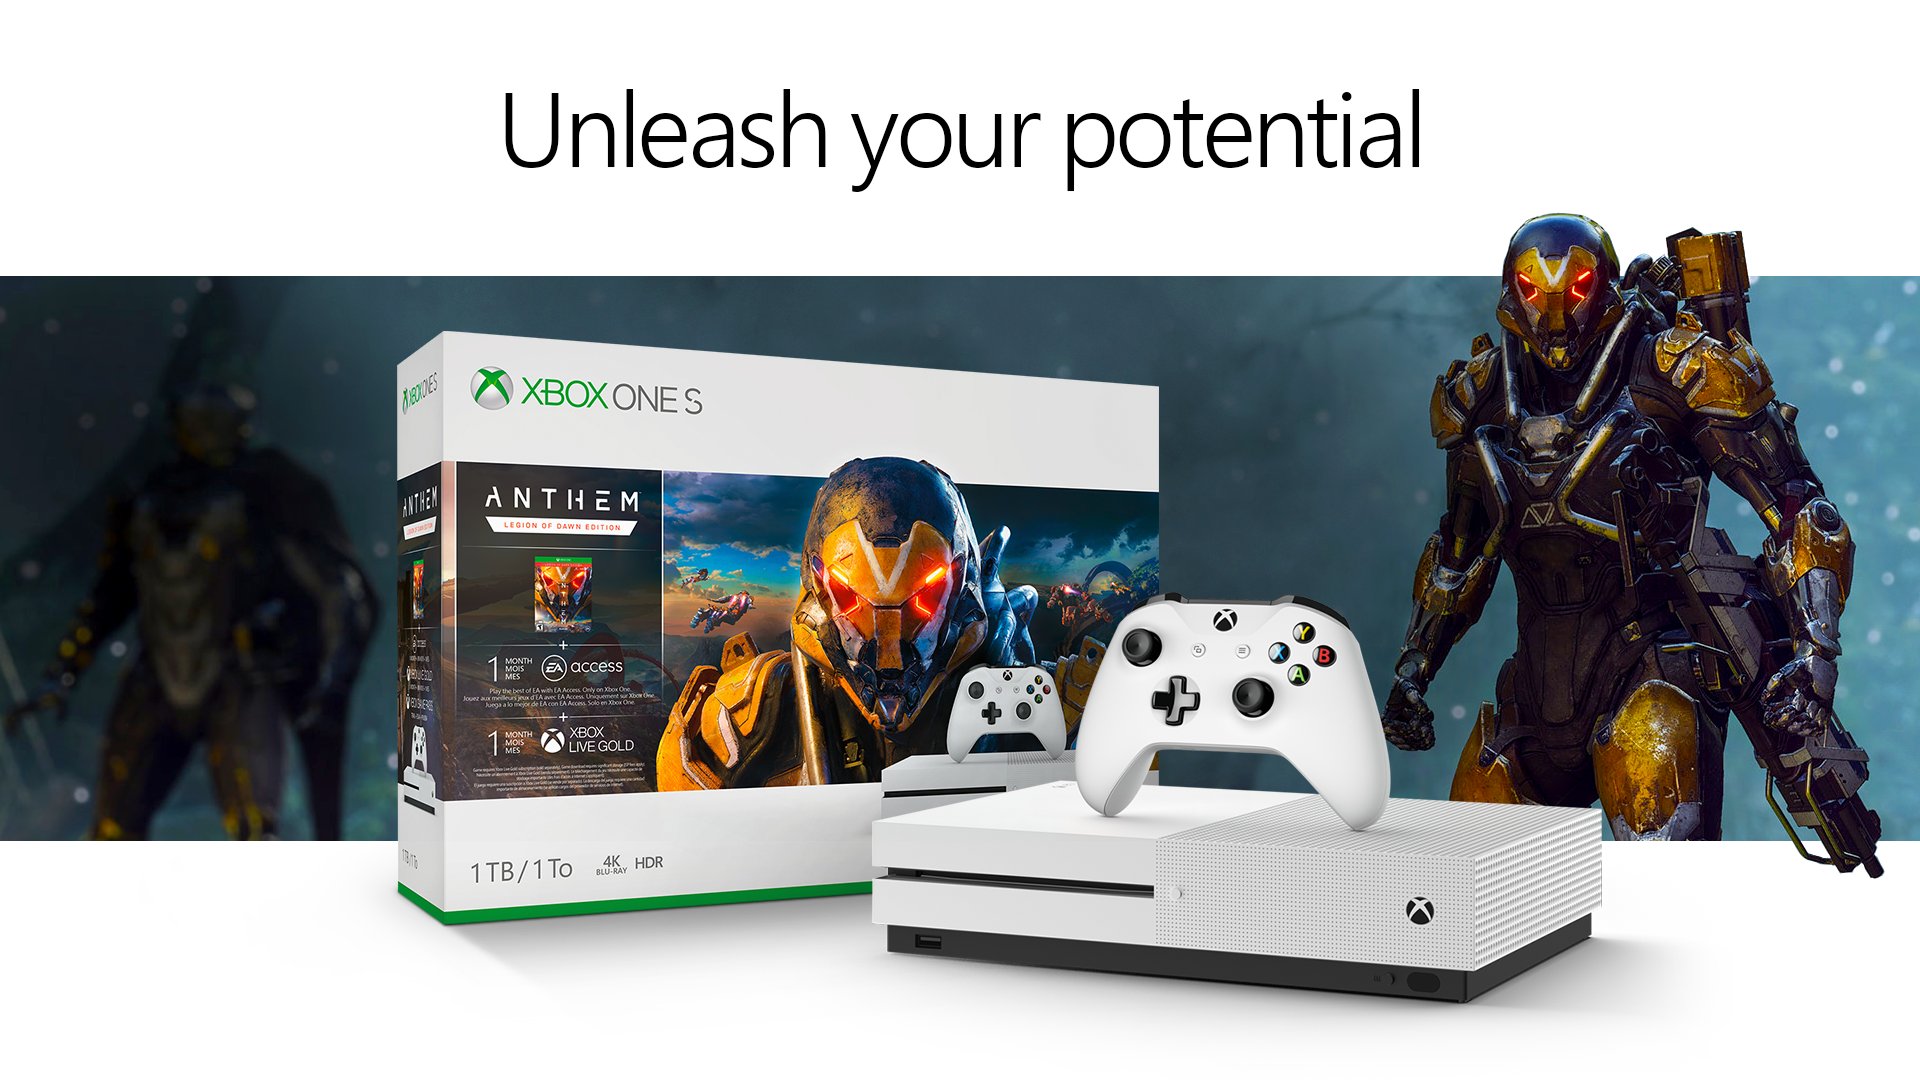 Anthem Xbox One S bundle